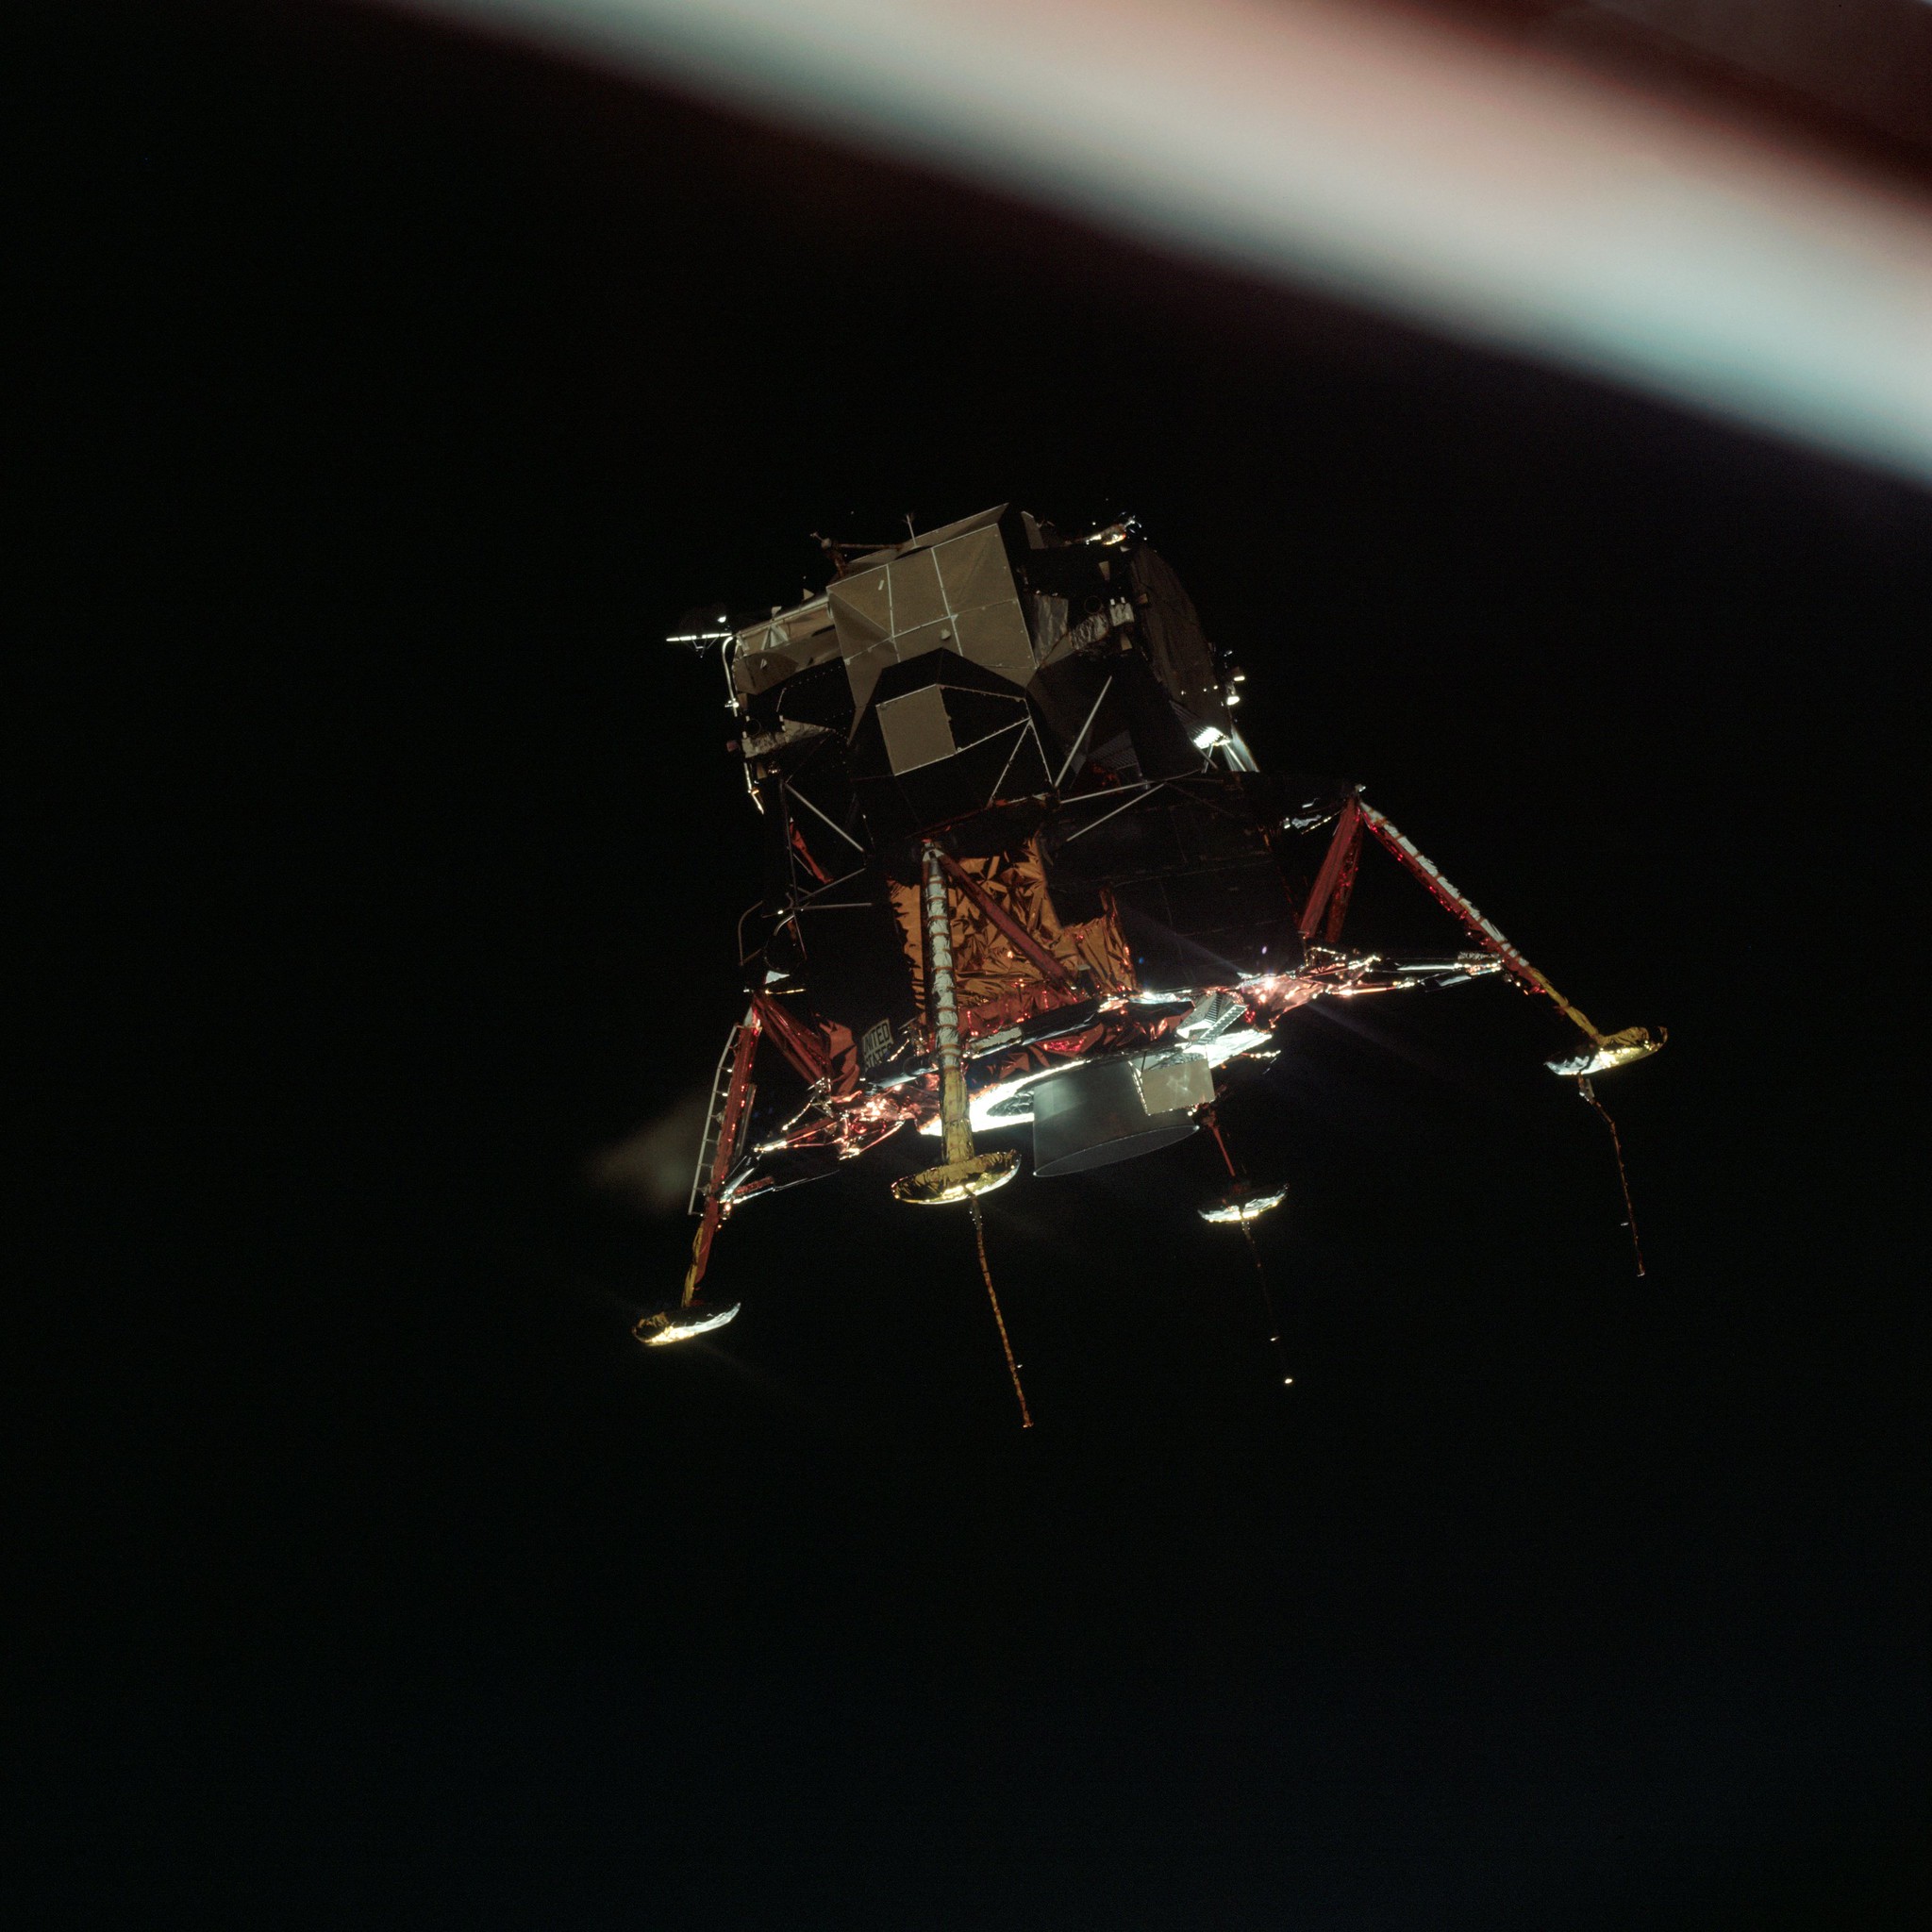 Apollo 11, module lunaire (LM) en configuration atterrissage lunaire, en orbite lunaire du module de commande et service (CSM) © NASA - as11-44-6581 - 20 Juillet 1969